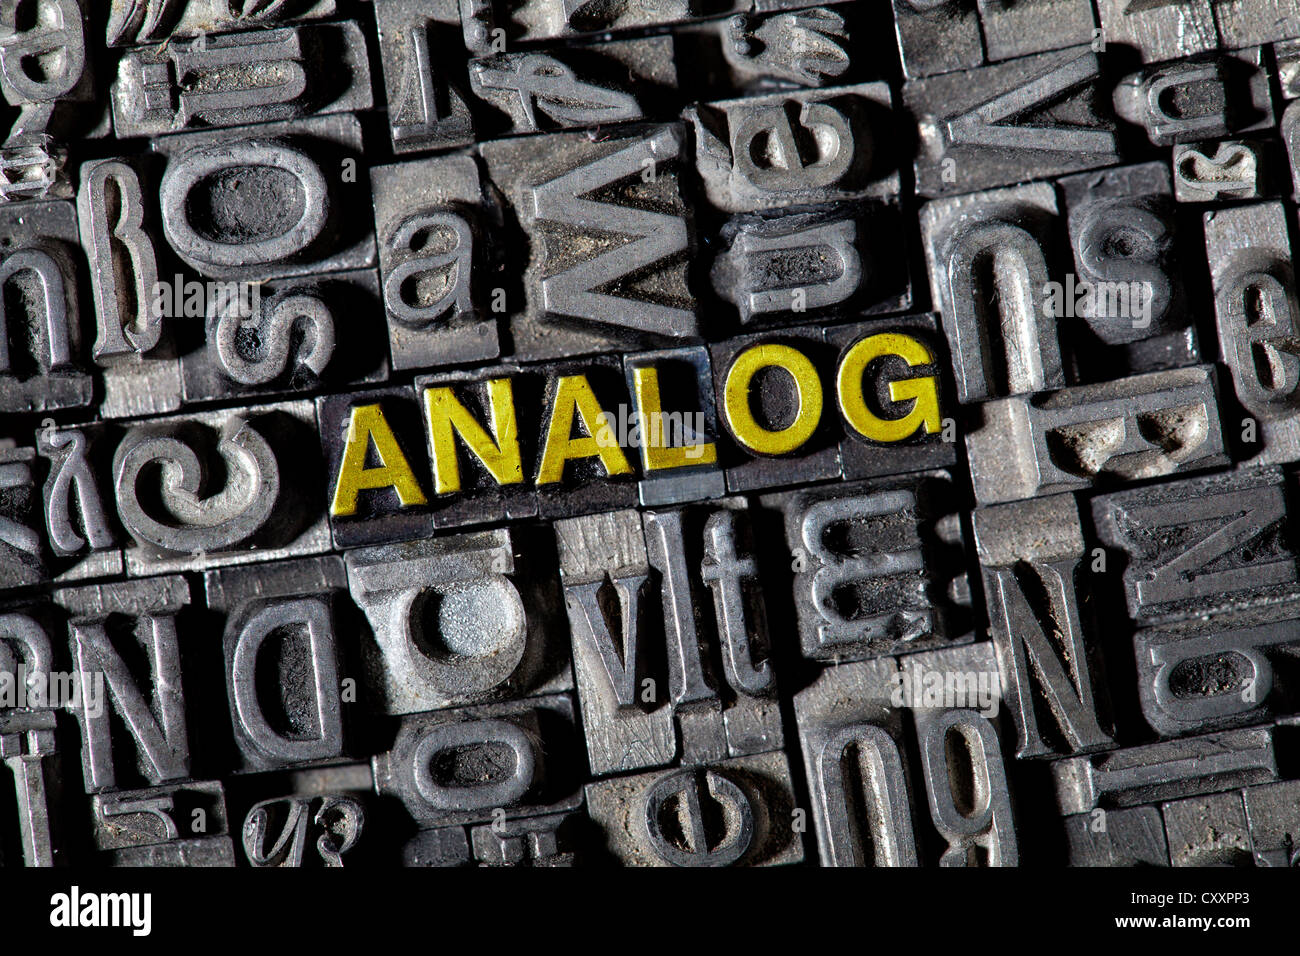 Plomb ancien lettres formant le mot "Analog", l'allemand pour les 'analogue' Banque D'Images